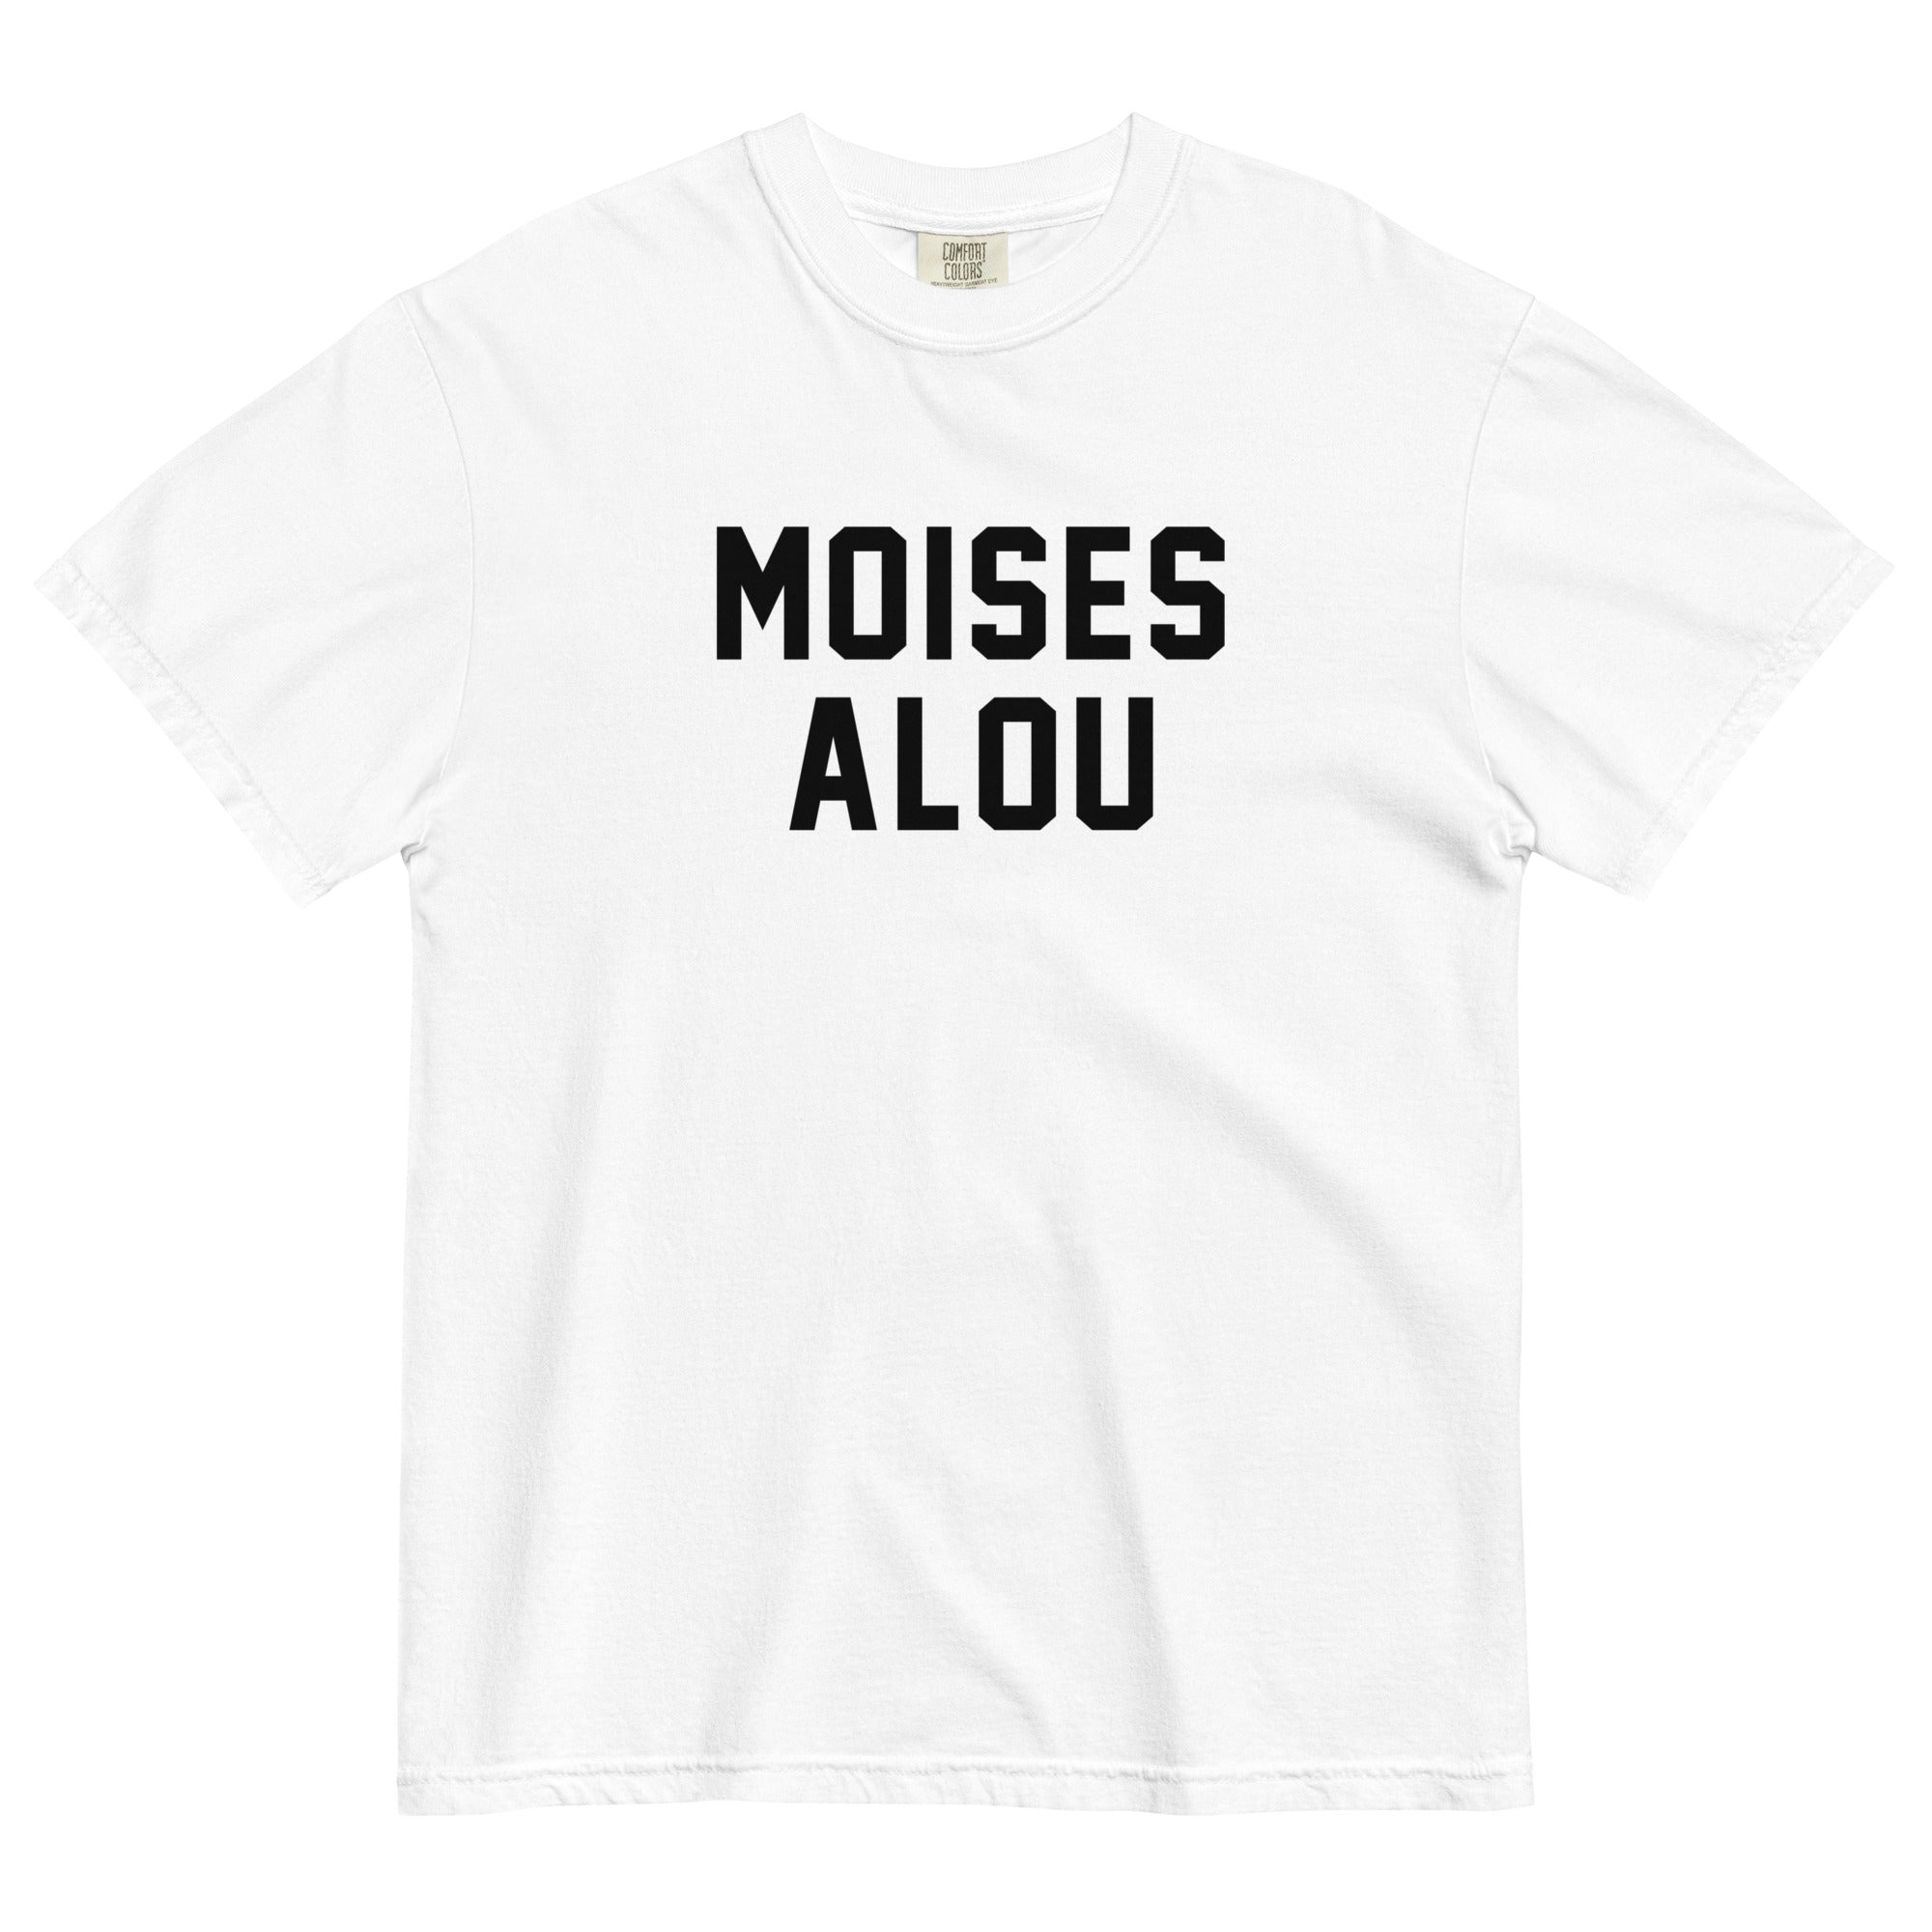 MOISES ALOU – Names on T-Shirts